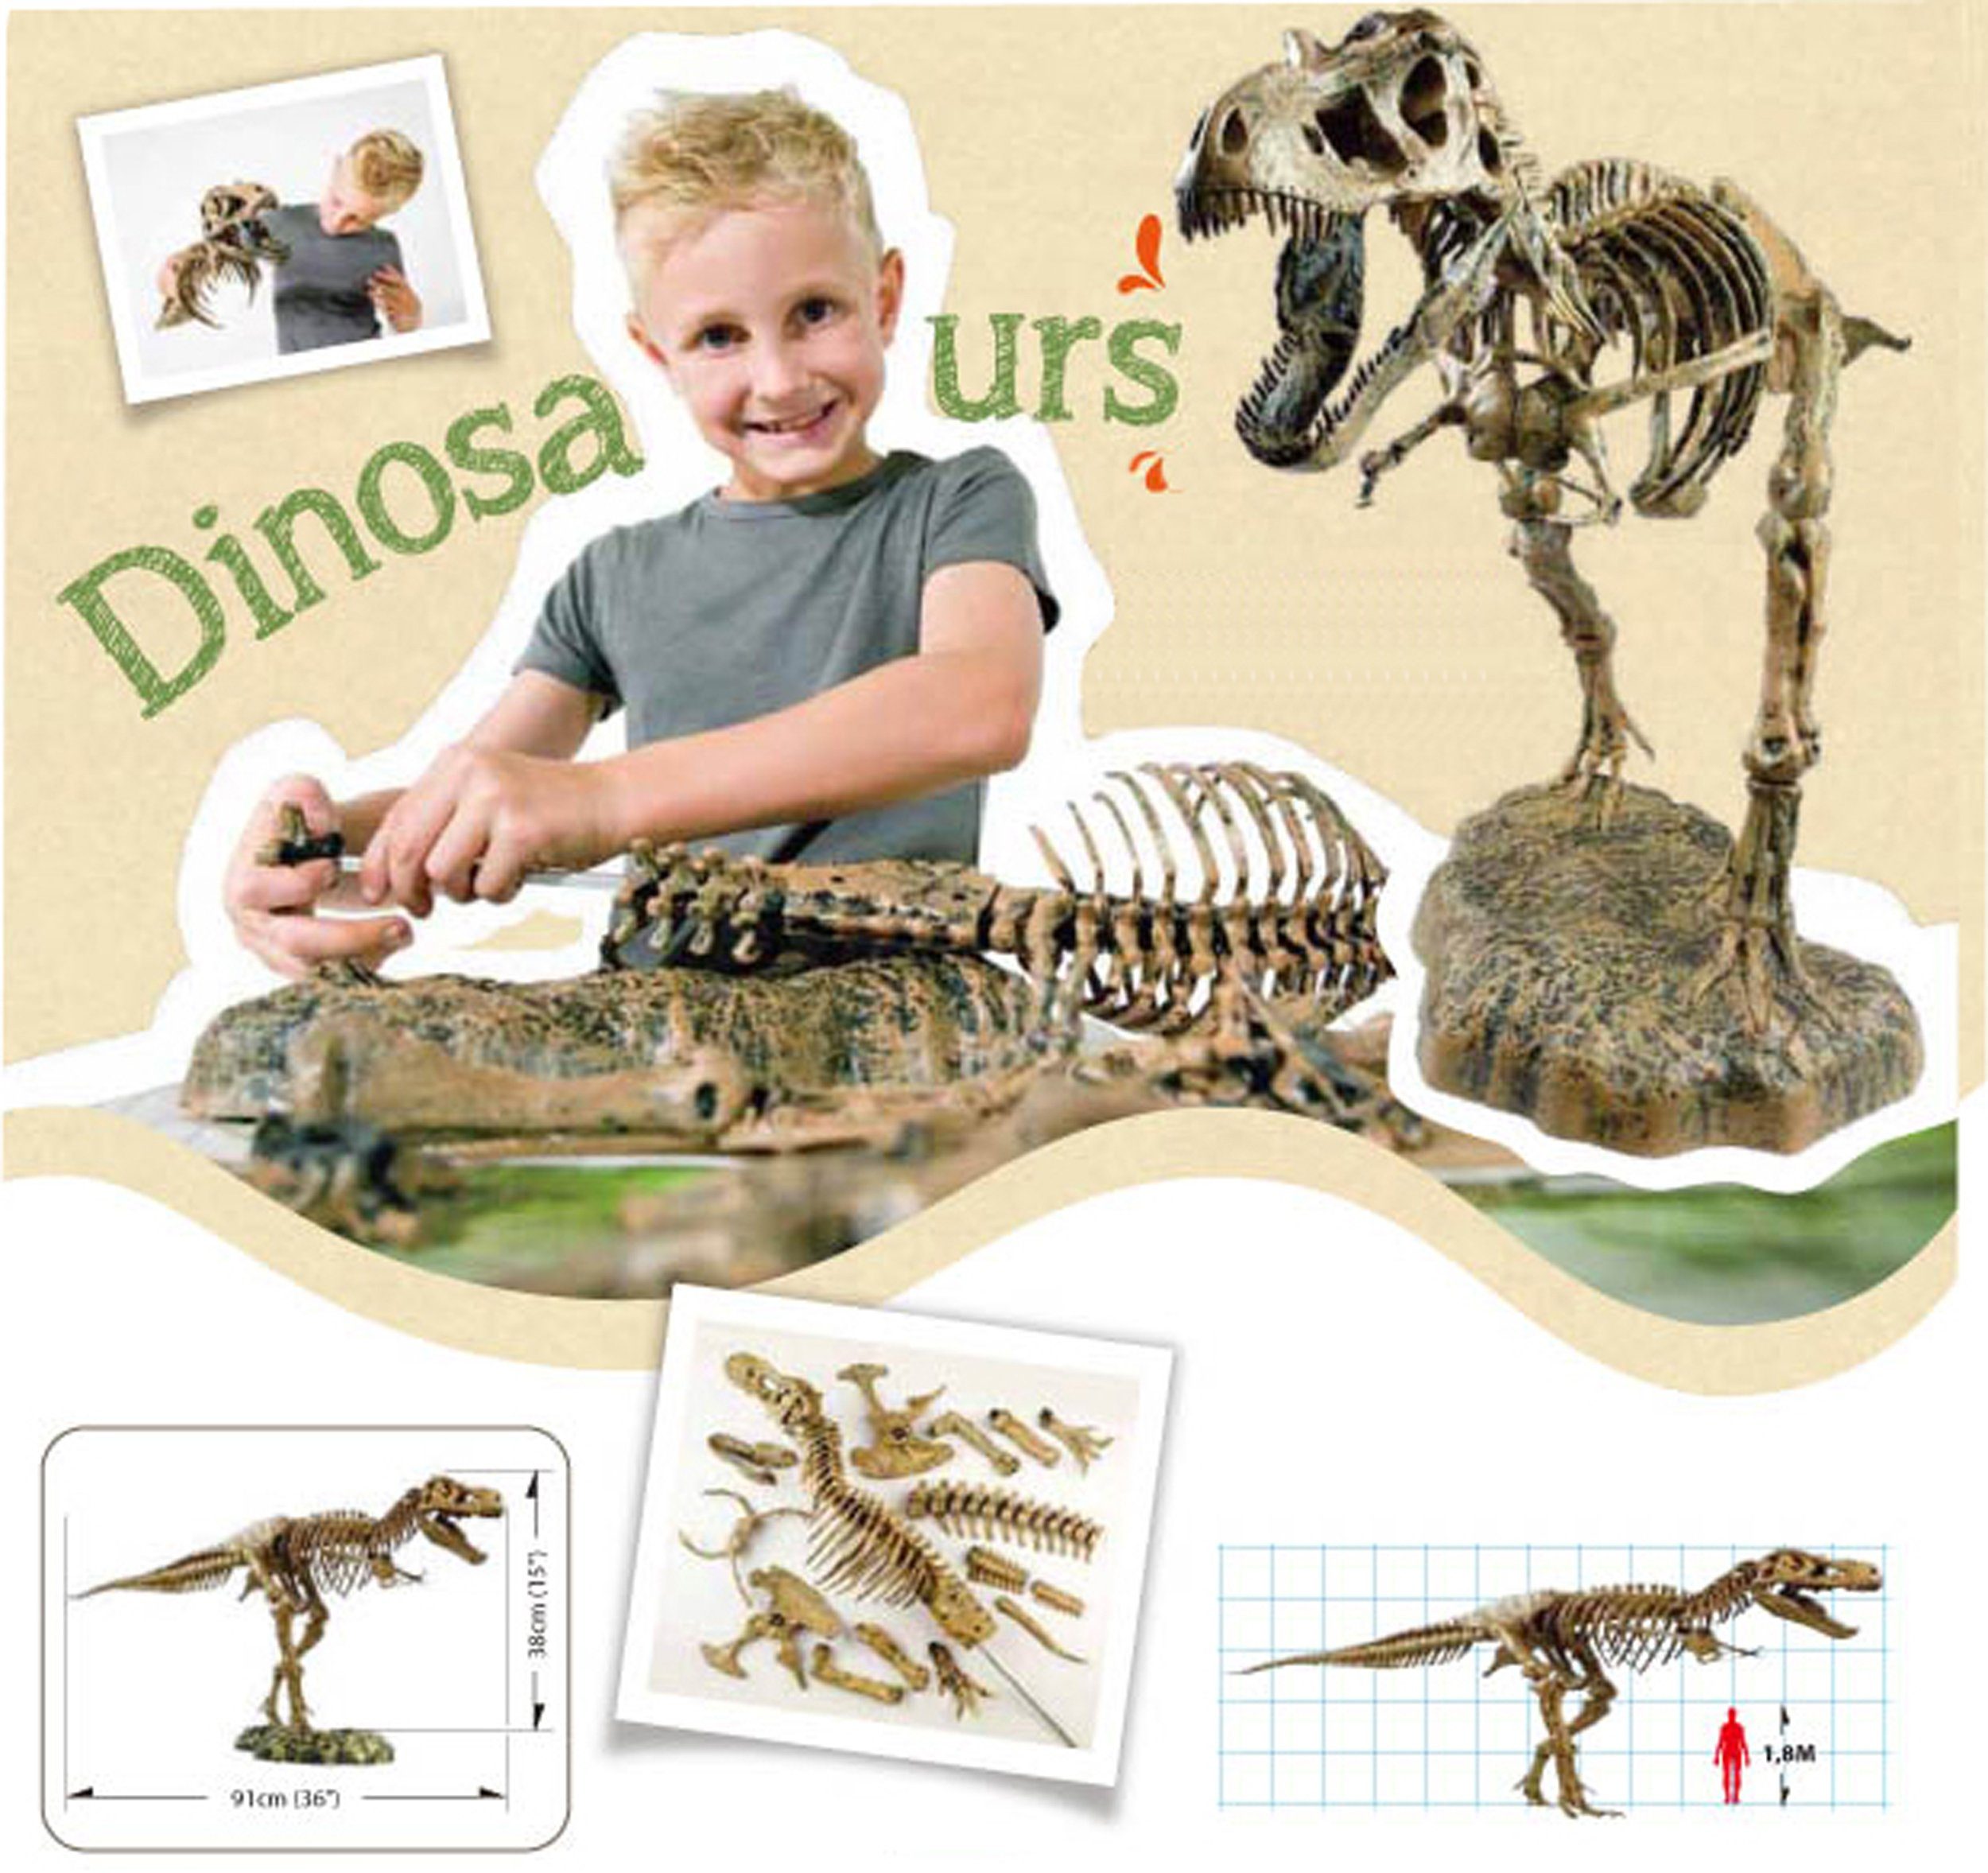 verständlich (51-tlg), Tyrannosaurus Modell T-Rex leicht Bausatz, Experimentierkasten Ständer Skelett Edu-Toys große Rex aufzubauen, mit Detailtreue 91cm